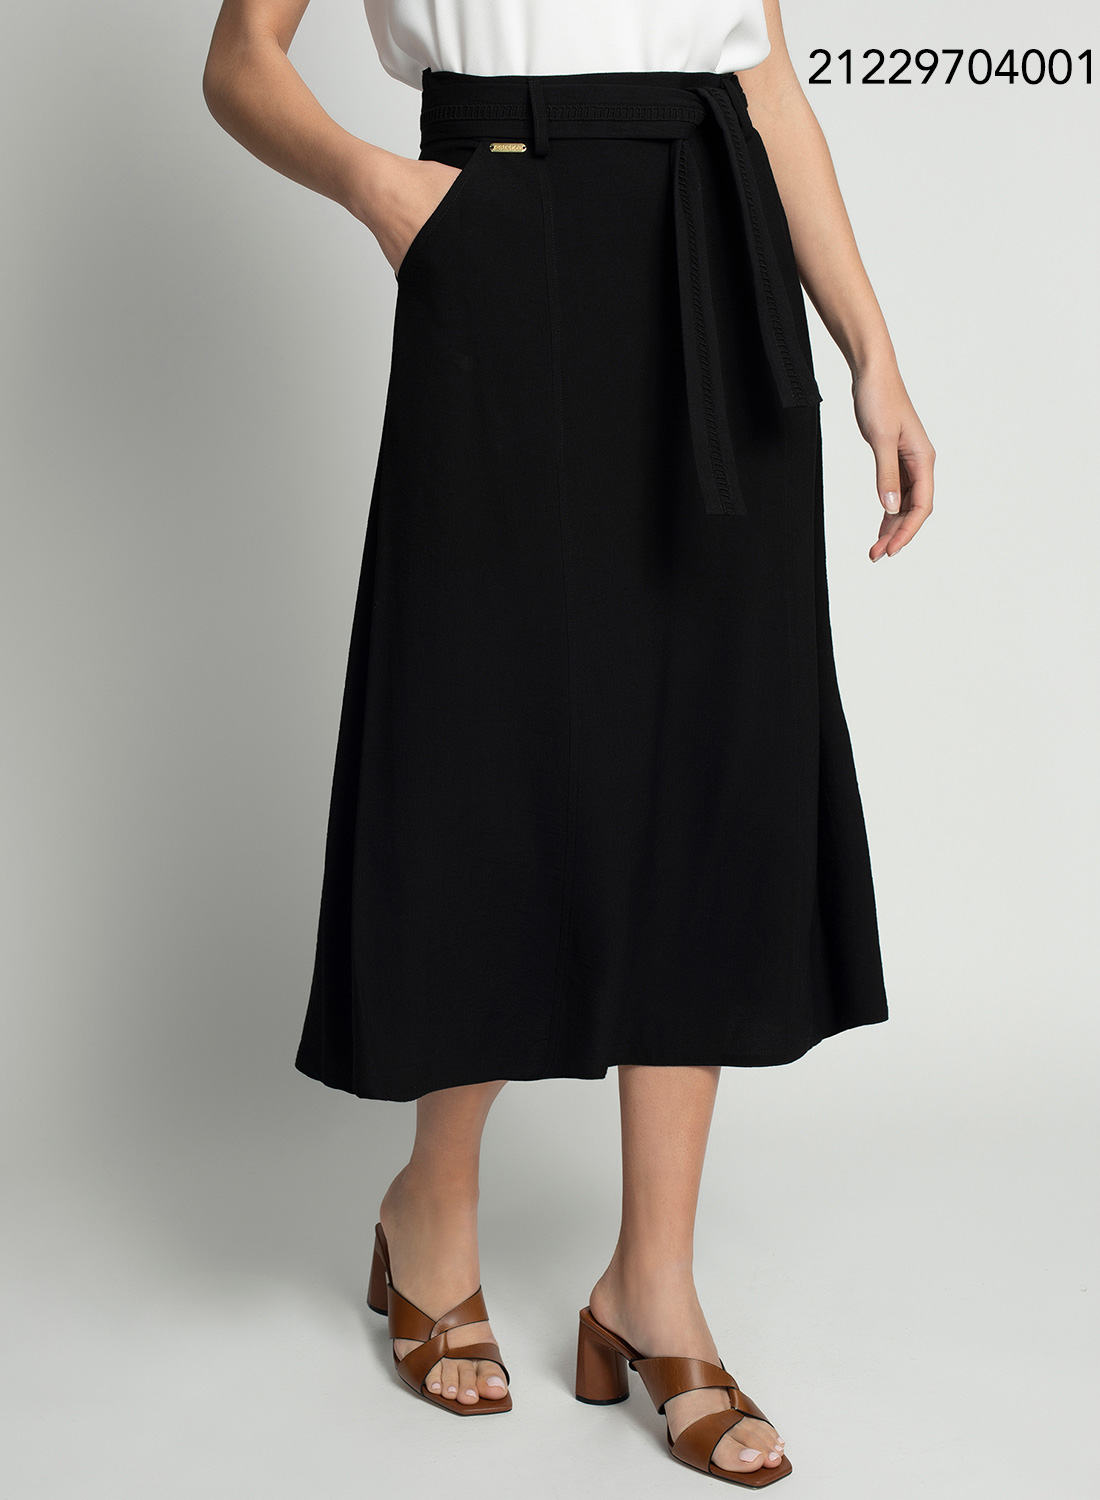 Διαχρονική μαύρη φούστα με ζωνάκι